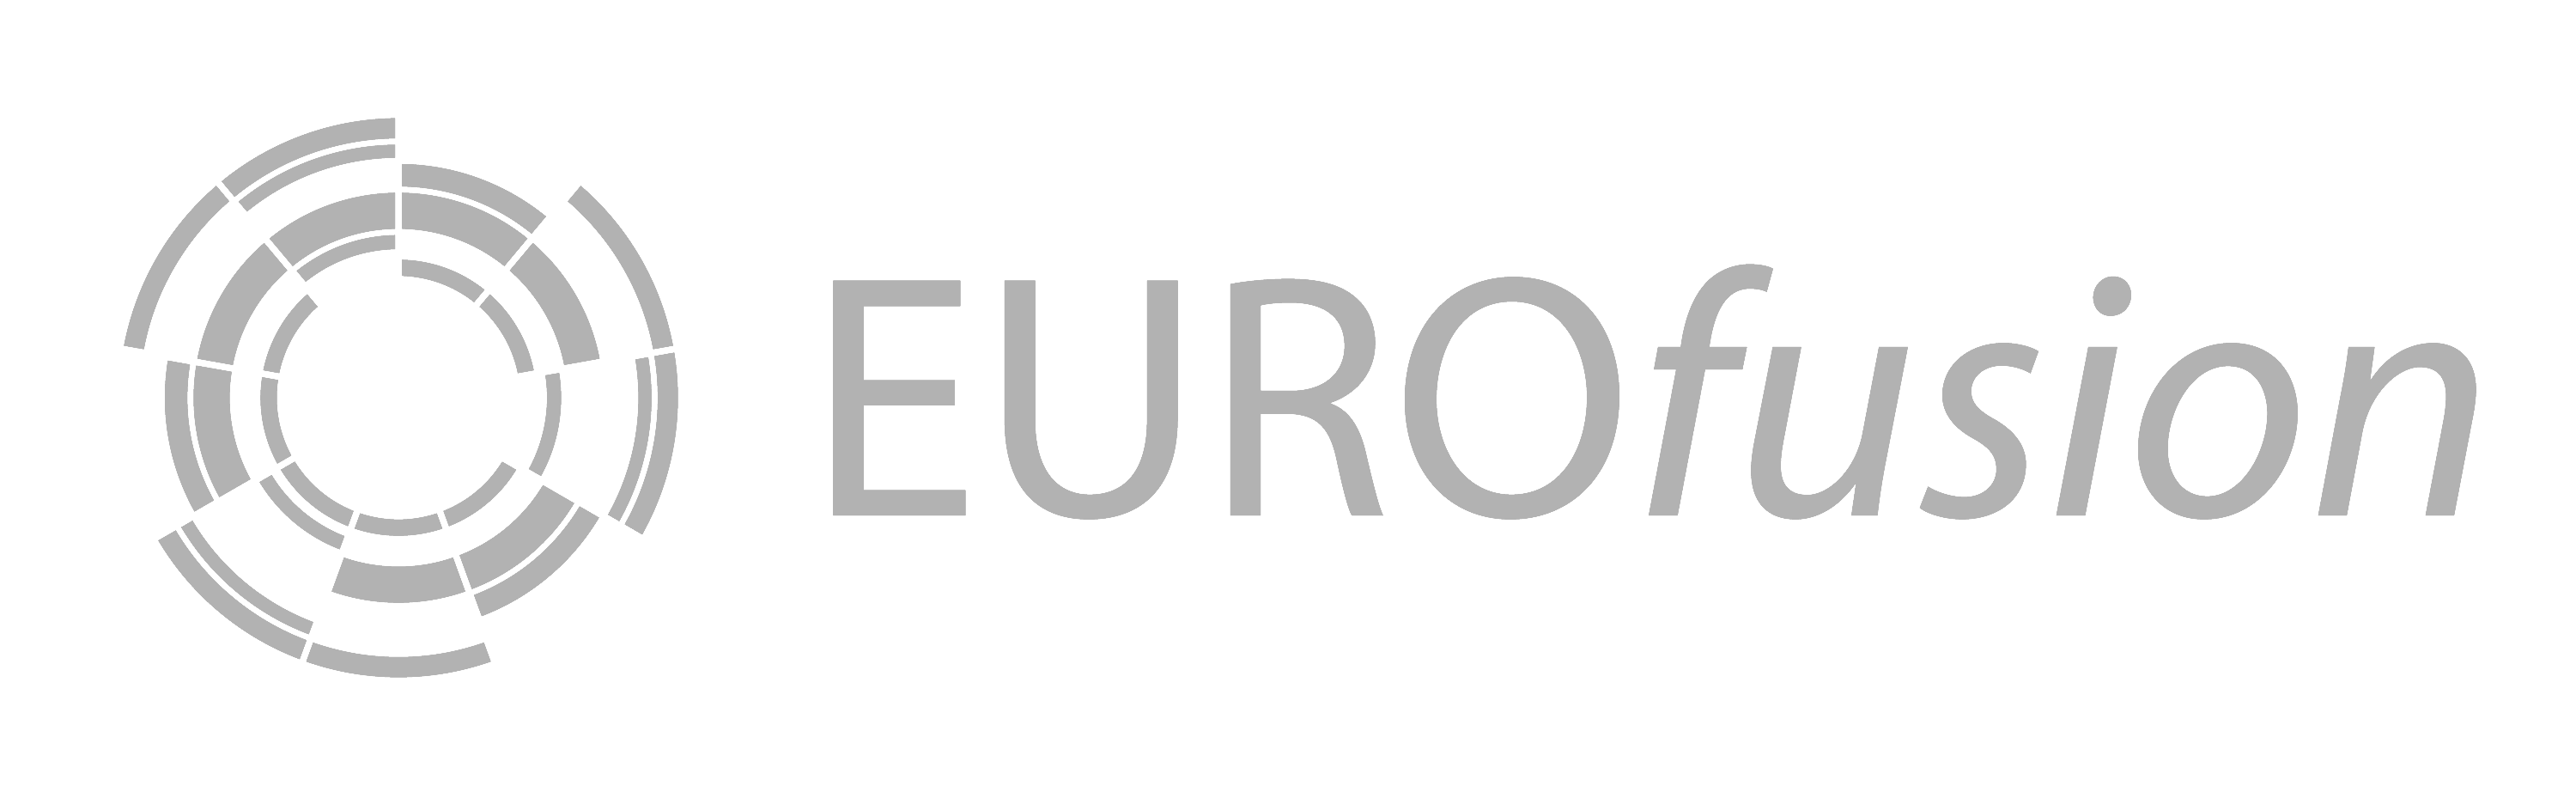 EUROfusion